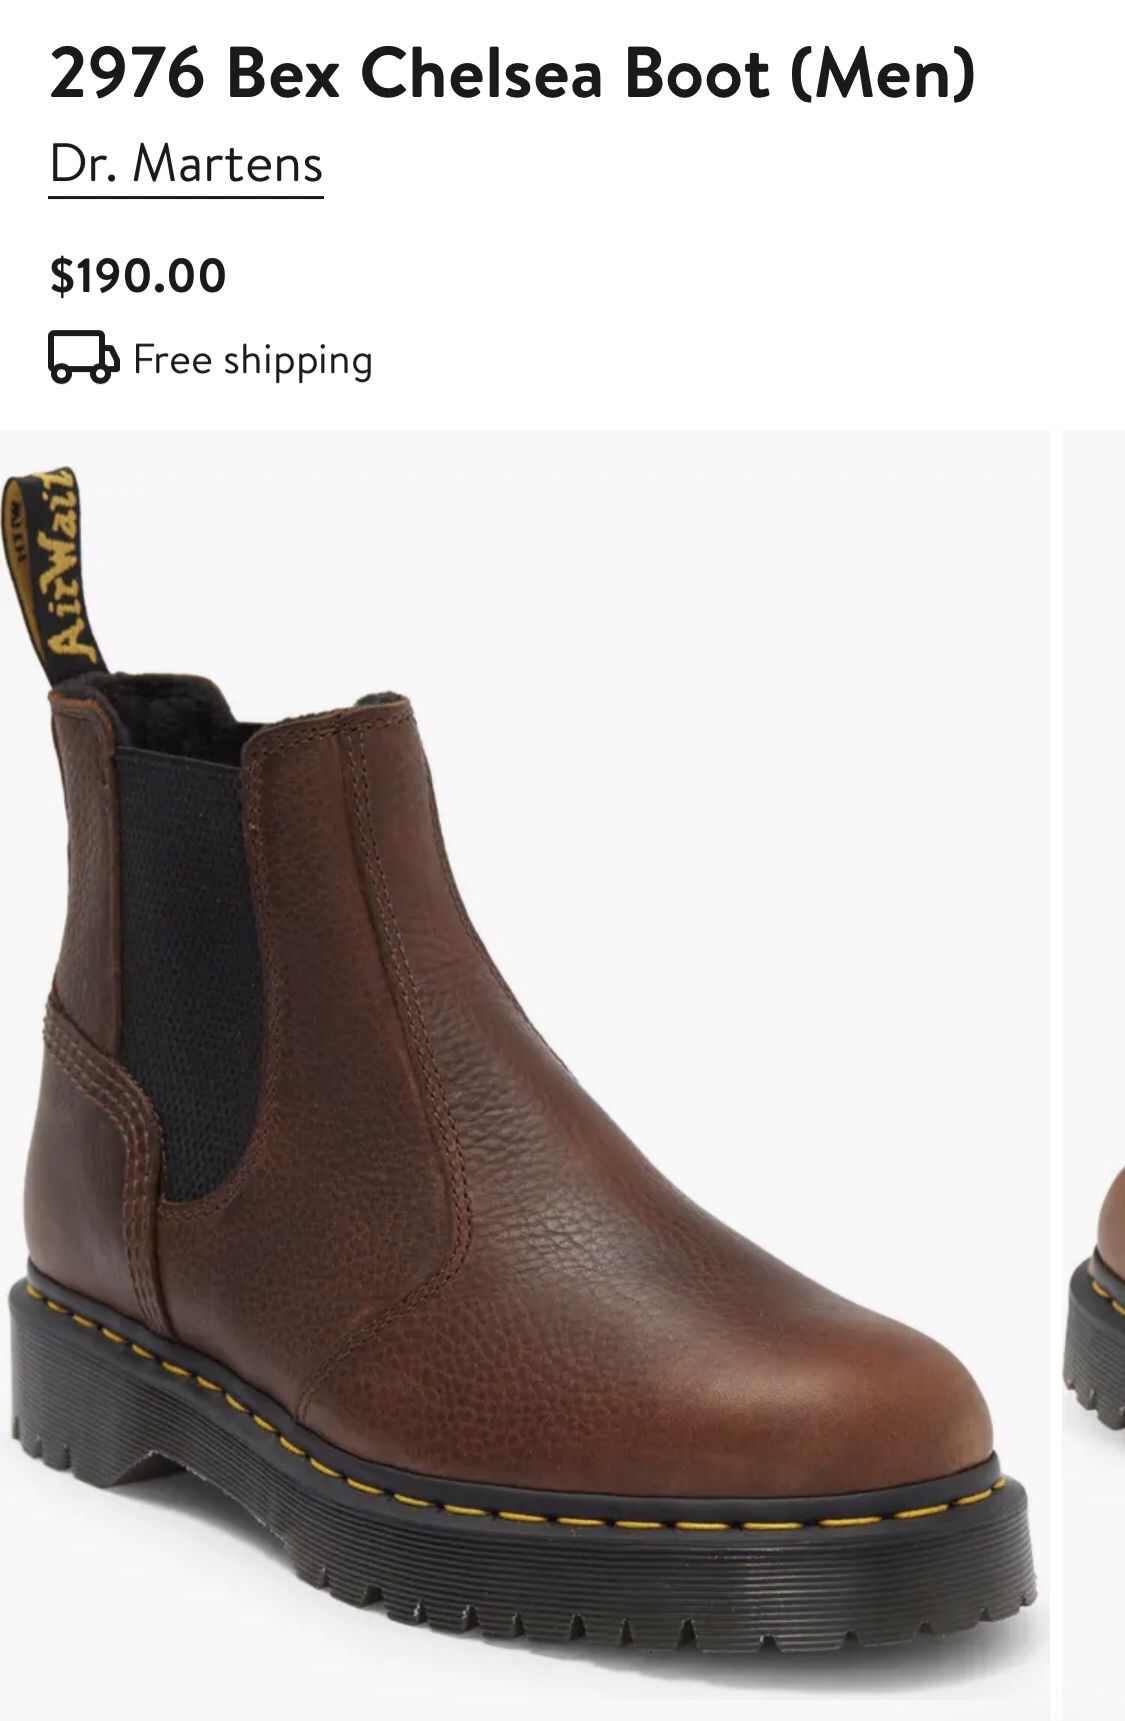 Dr Martens 2976 FL Leather Chelsea Boots Size 9Men/Size 8 Women